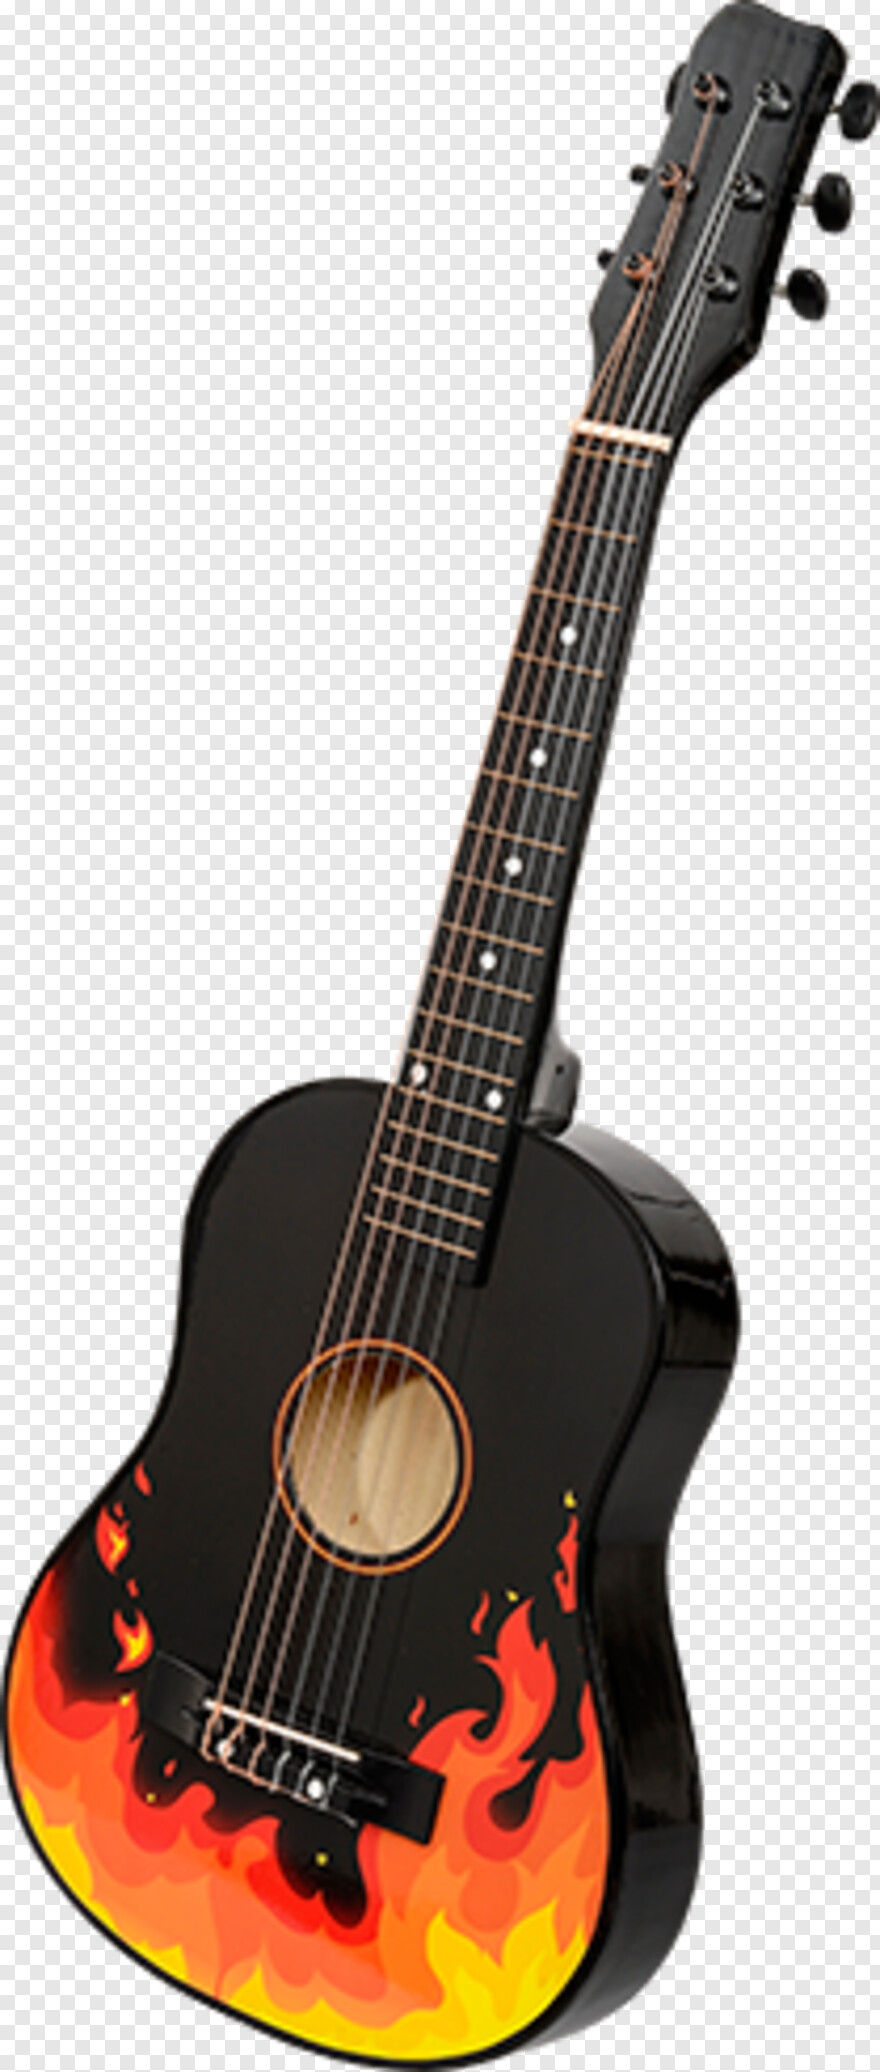 guitar # 575805